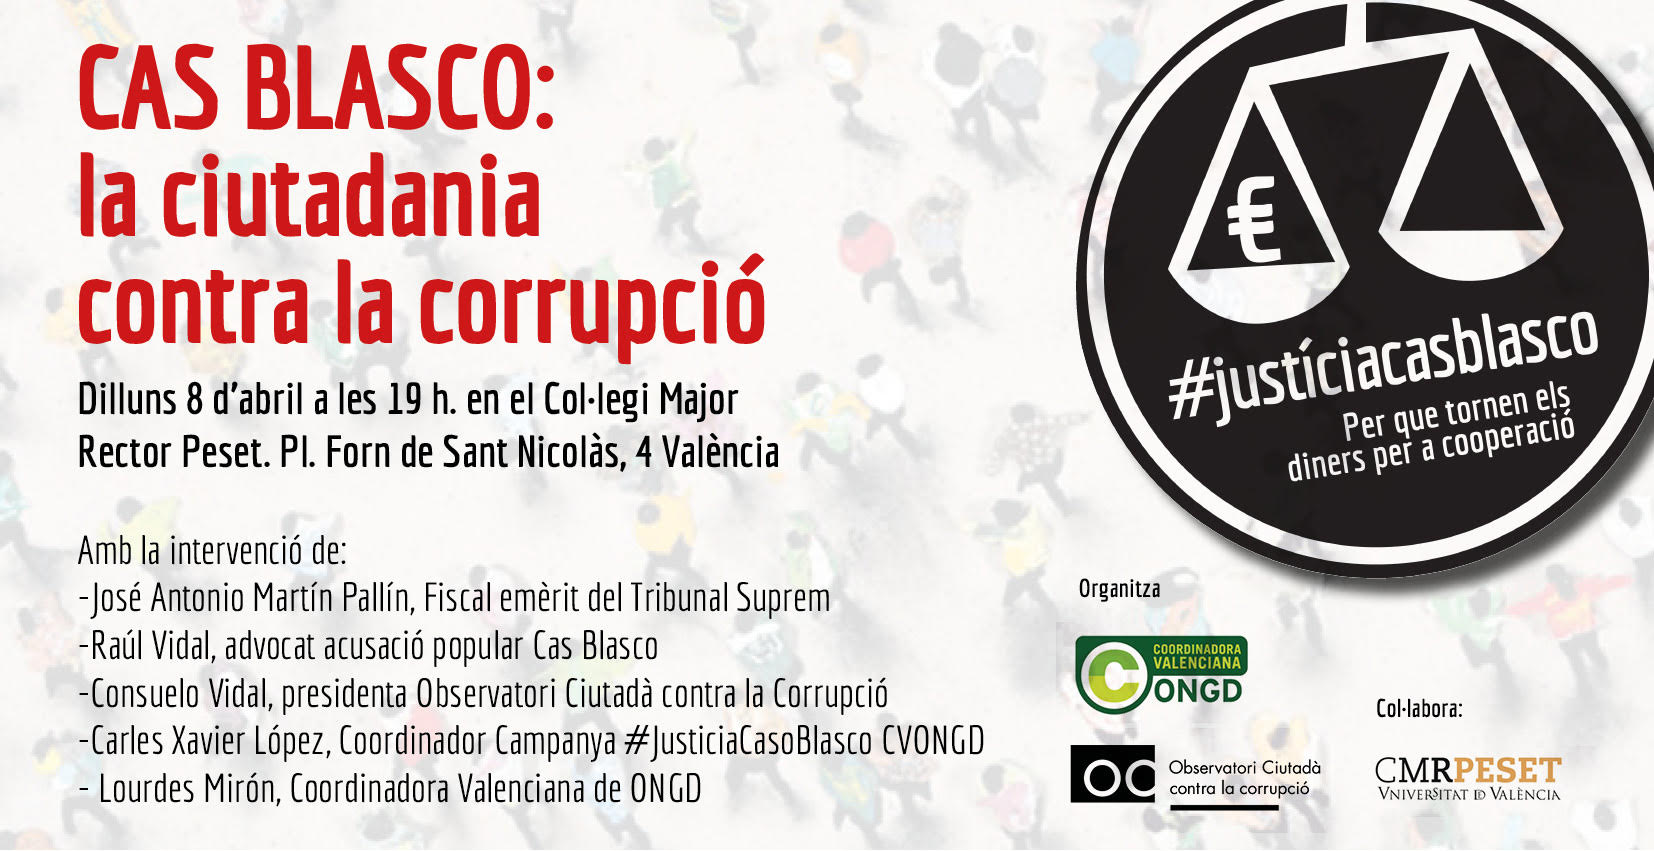 Tarjeta_Cas_Blasco_ciutadania_contra_corrupció